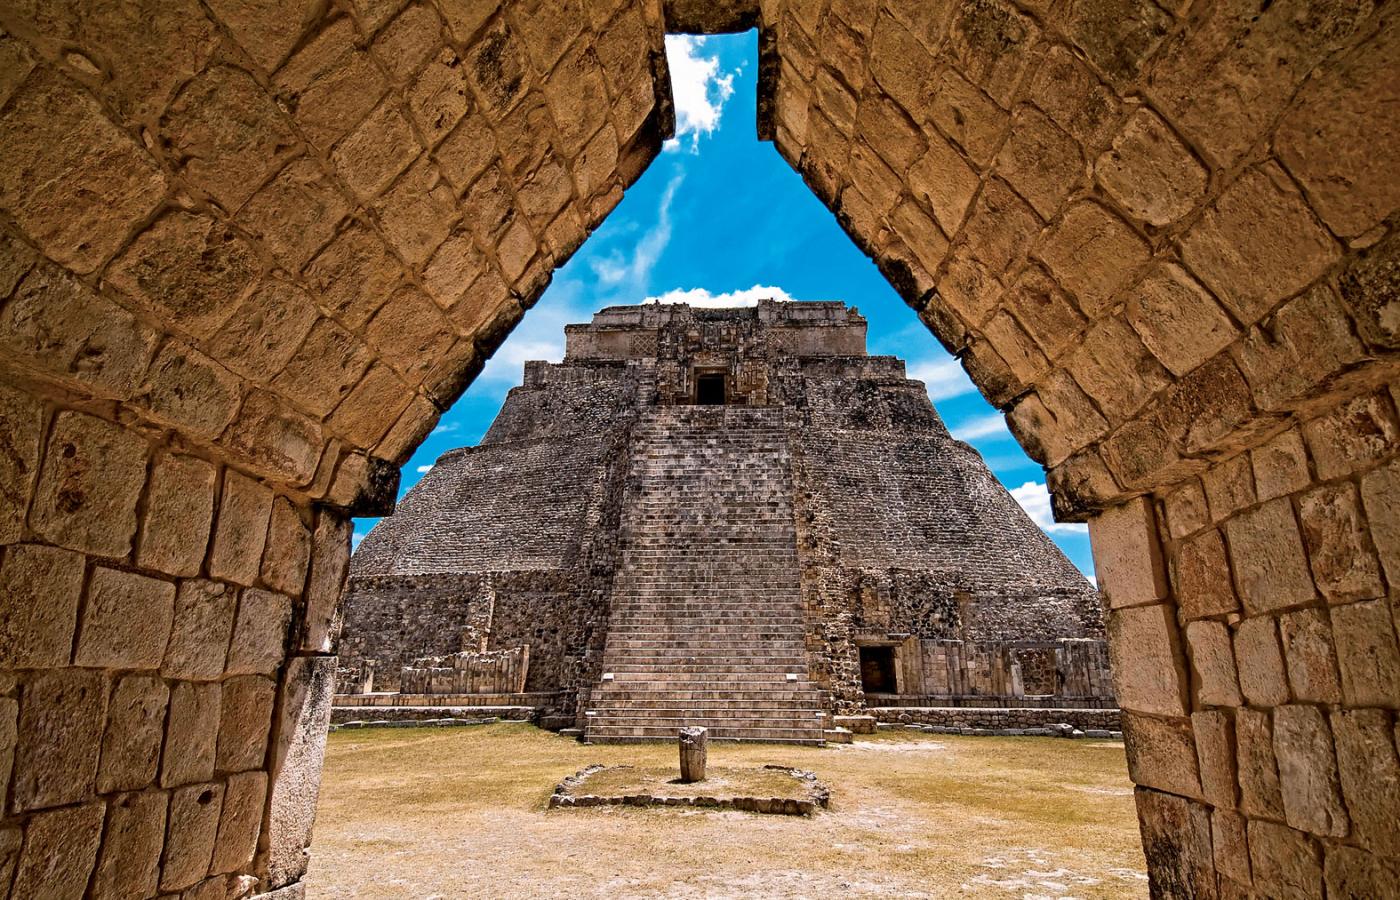 Piramida Czarownika, piramida schodkowa położona w starożytnym mieście Majów Uxmal w stanie Jukatan w Meksyku.